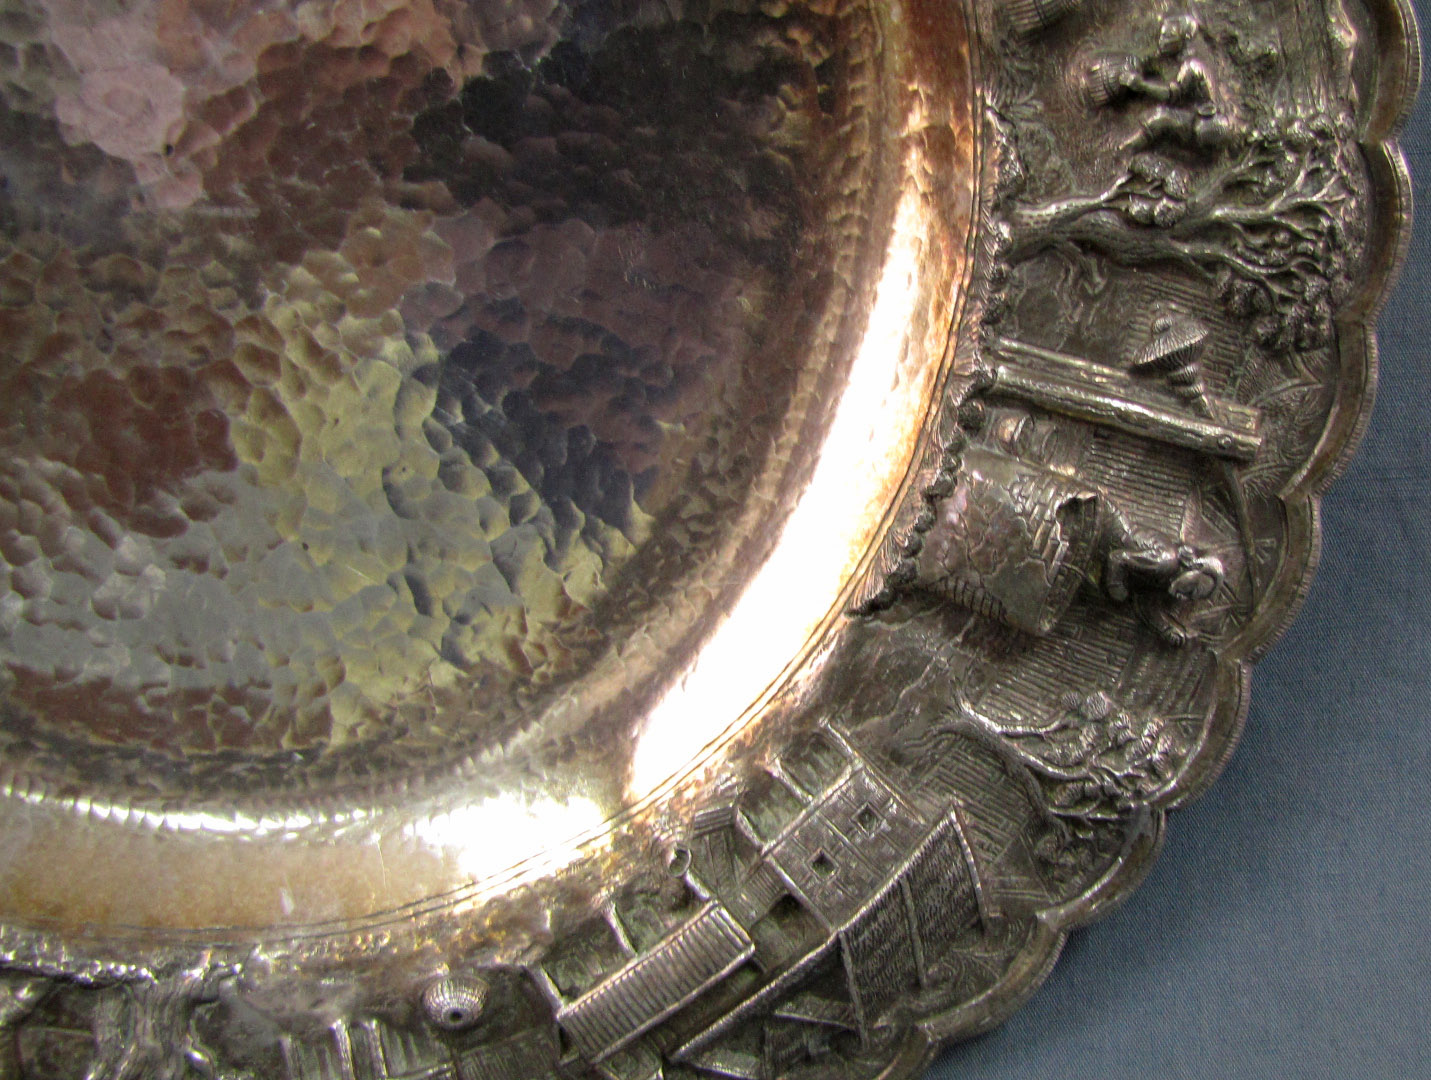 Silber, eine große Platte und eine Deckeldose, wohl Indien. Punzen. Geprüft.Schale: 1173 Gramm. - Image 17 of 19